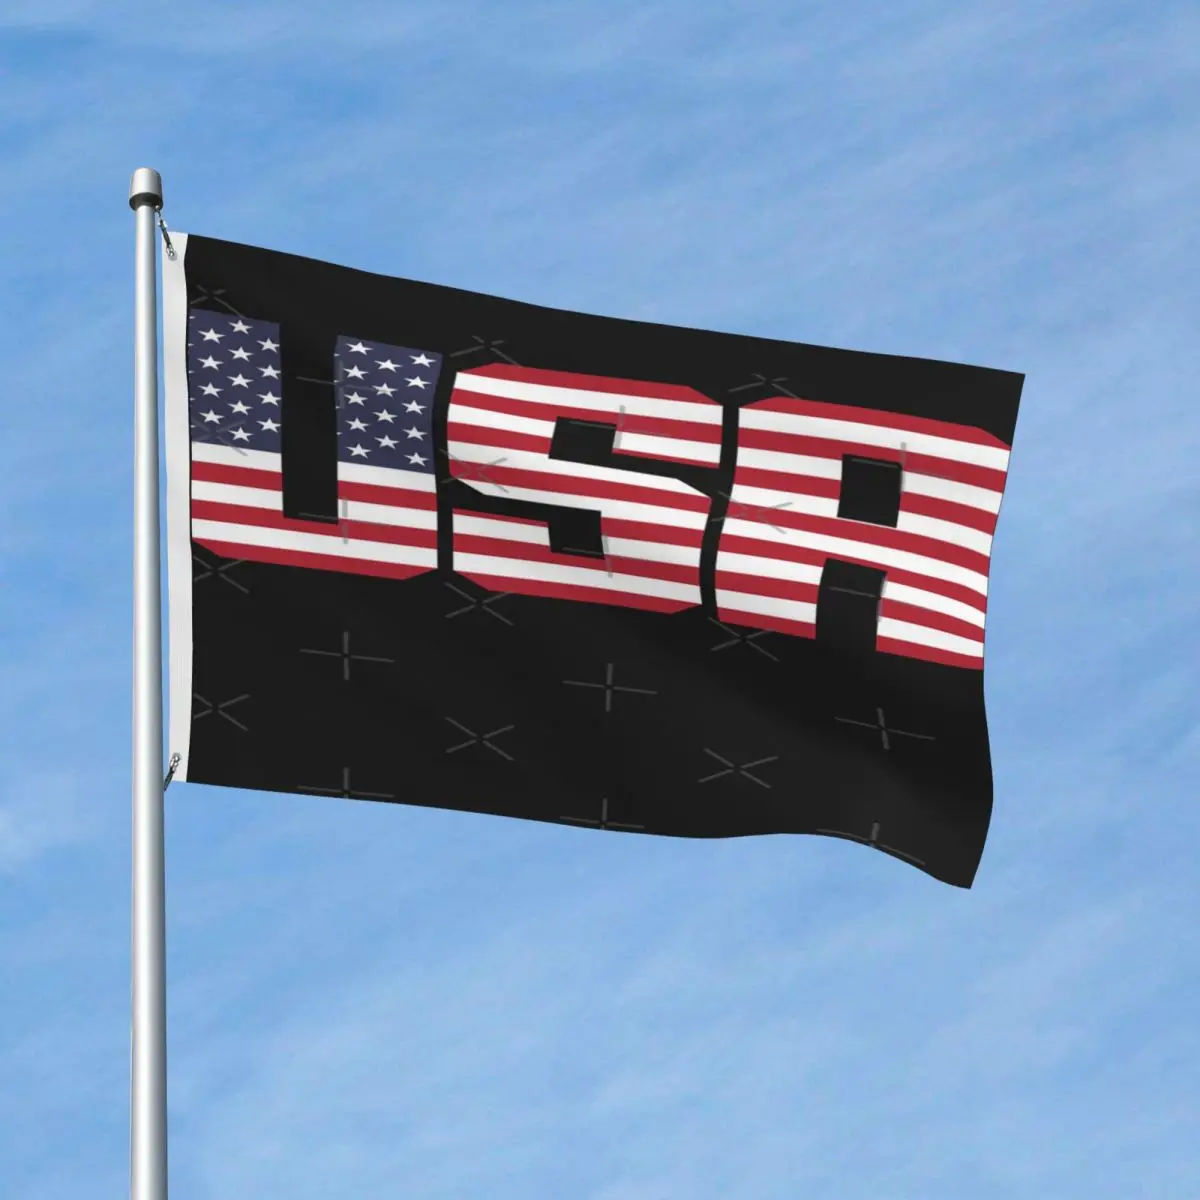 

Patriot футболка Патриотический американский флаг 4 июля дизайн Декор с флагами полиэфирный материал декоративный устойчивый к выцветанию лег...